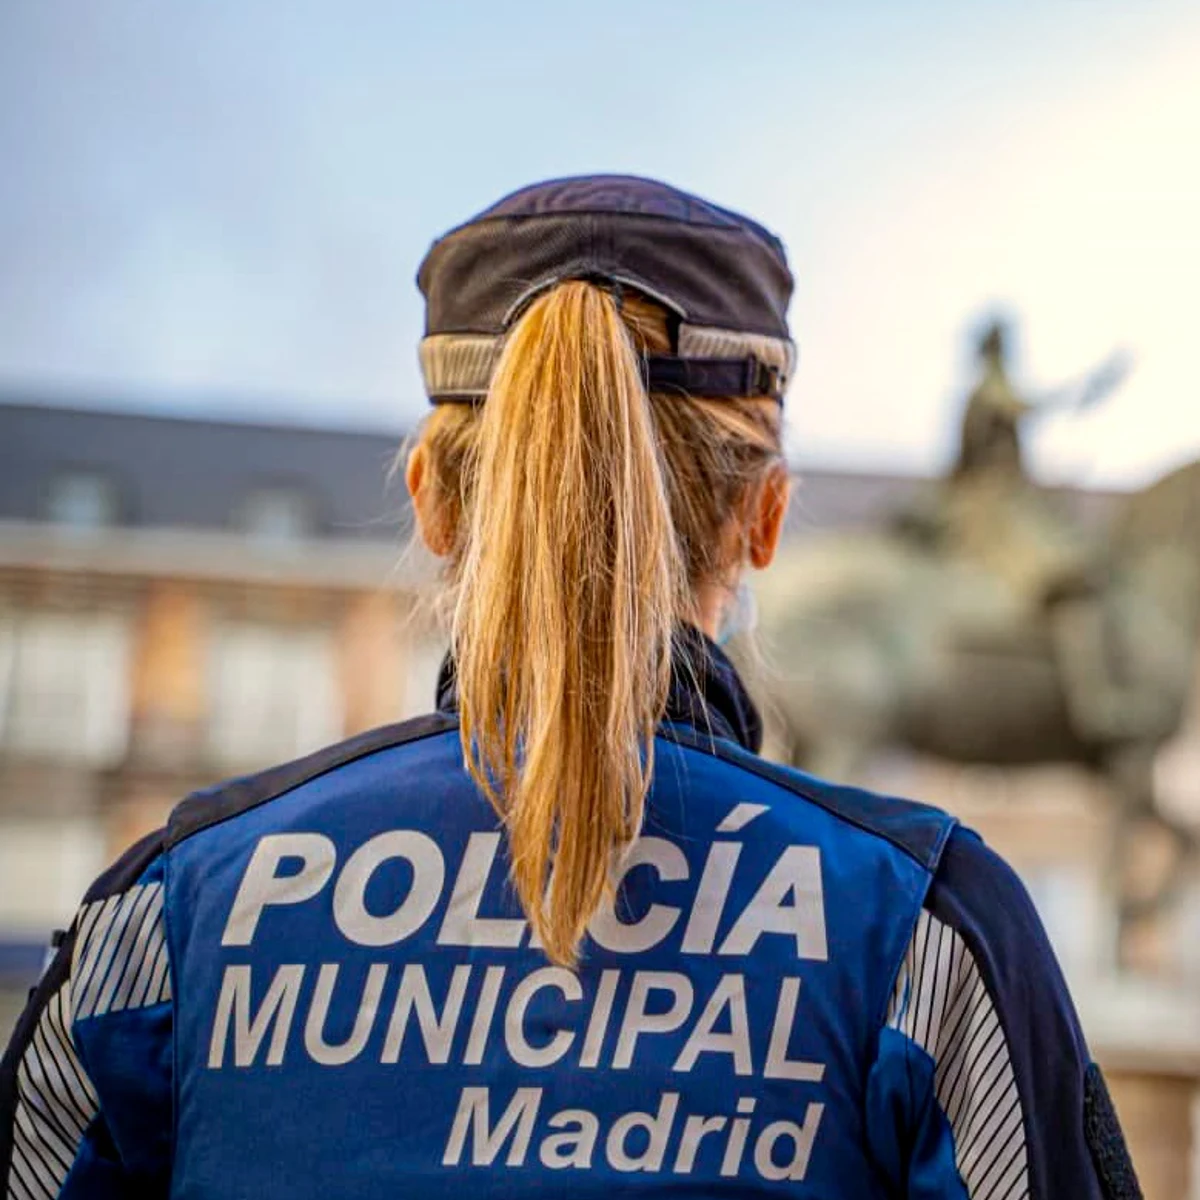 La Policía Municipal Madrid estrenará nuevos uniformes quejas de los agentes